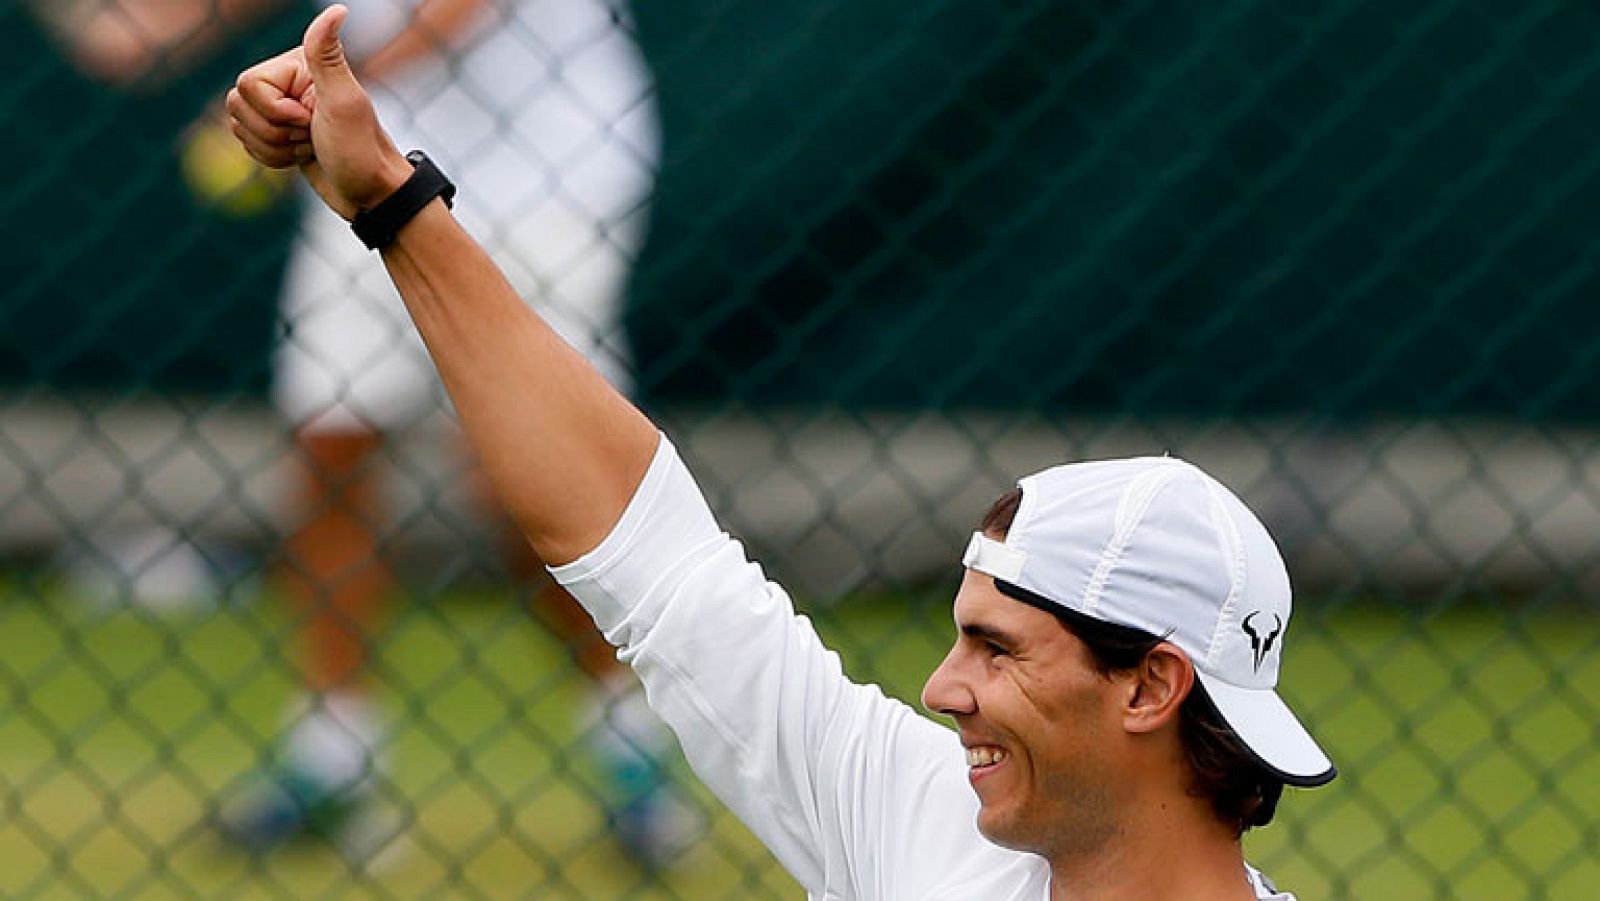 Después de hacer historia en Roland Garros Rafa Nadal vuelve al escenario donde comenzó el peor calvario de su carrera, Wimbledon. La hierba es el peor enemigo para su rodilla. Mañana debutará frente al belga Darcis y en el camino le esperan los riva